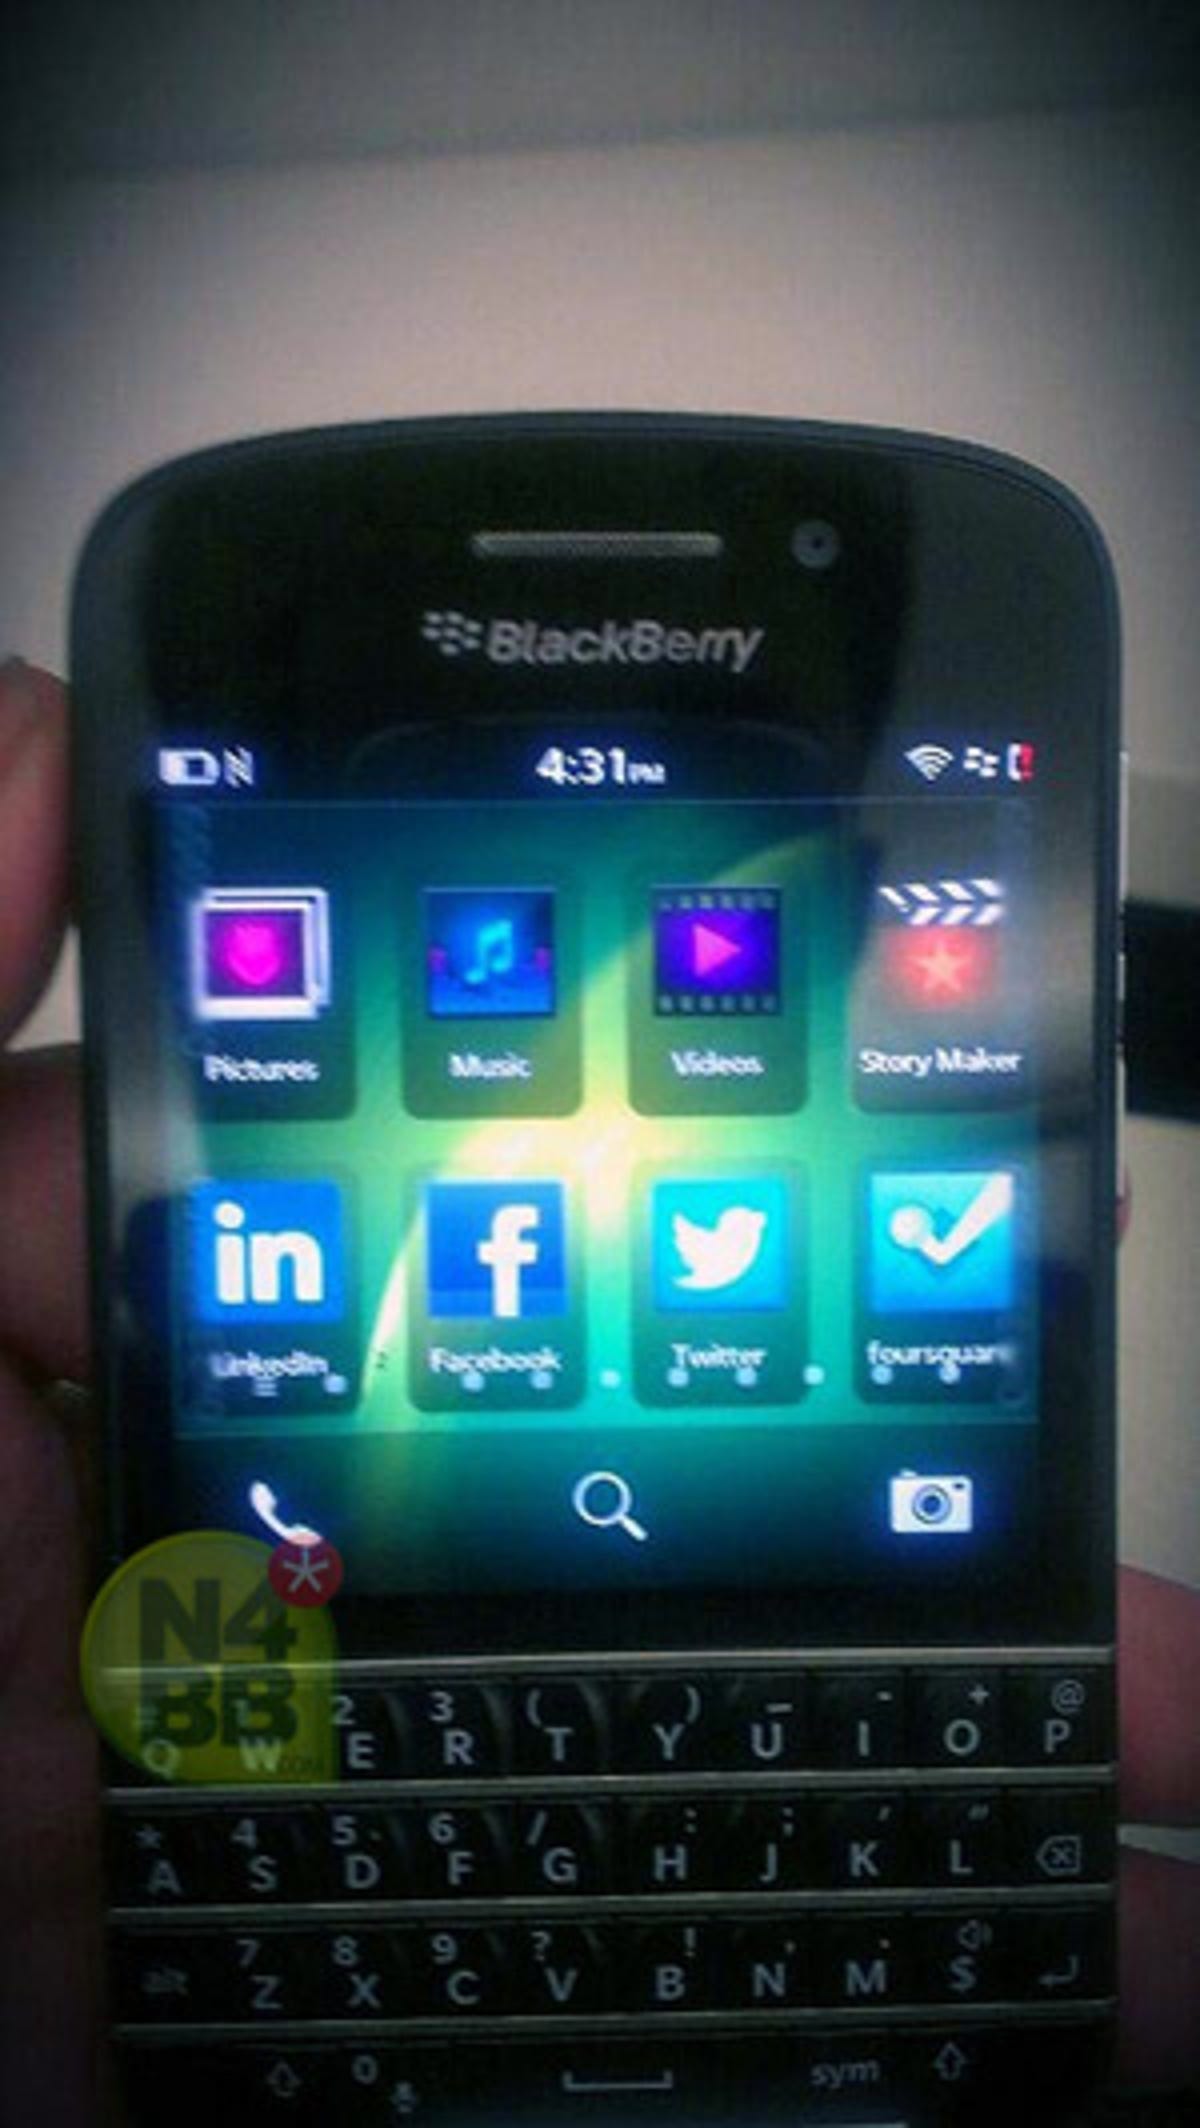 blackberry-x10-n-series-2.jpg